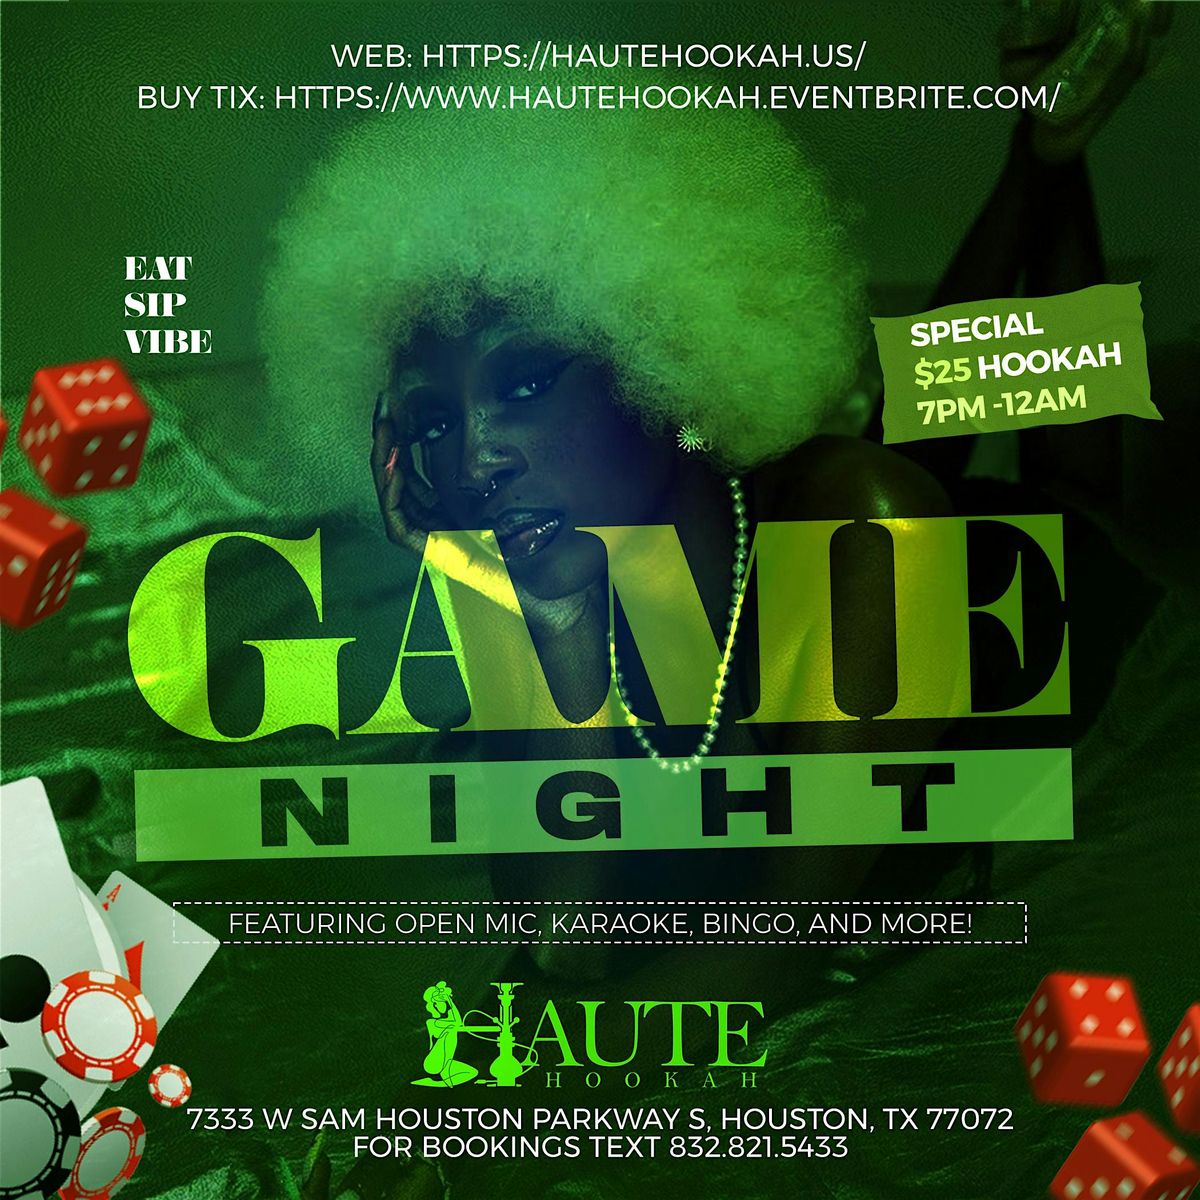 Haute Game Night featuring Karaoke, Bingo, Open Mic, & More!